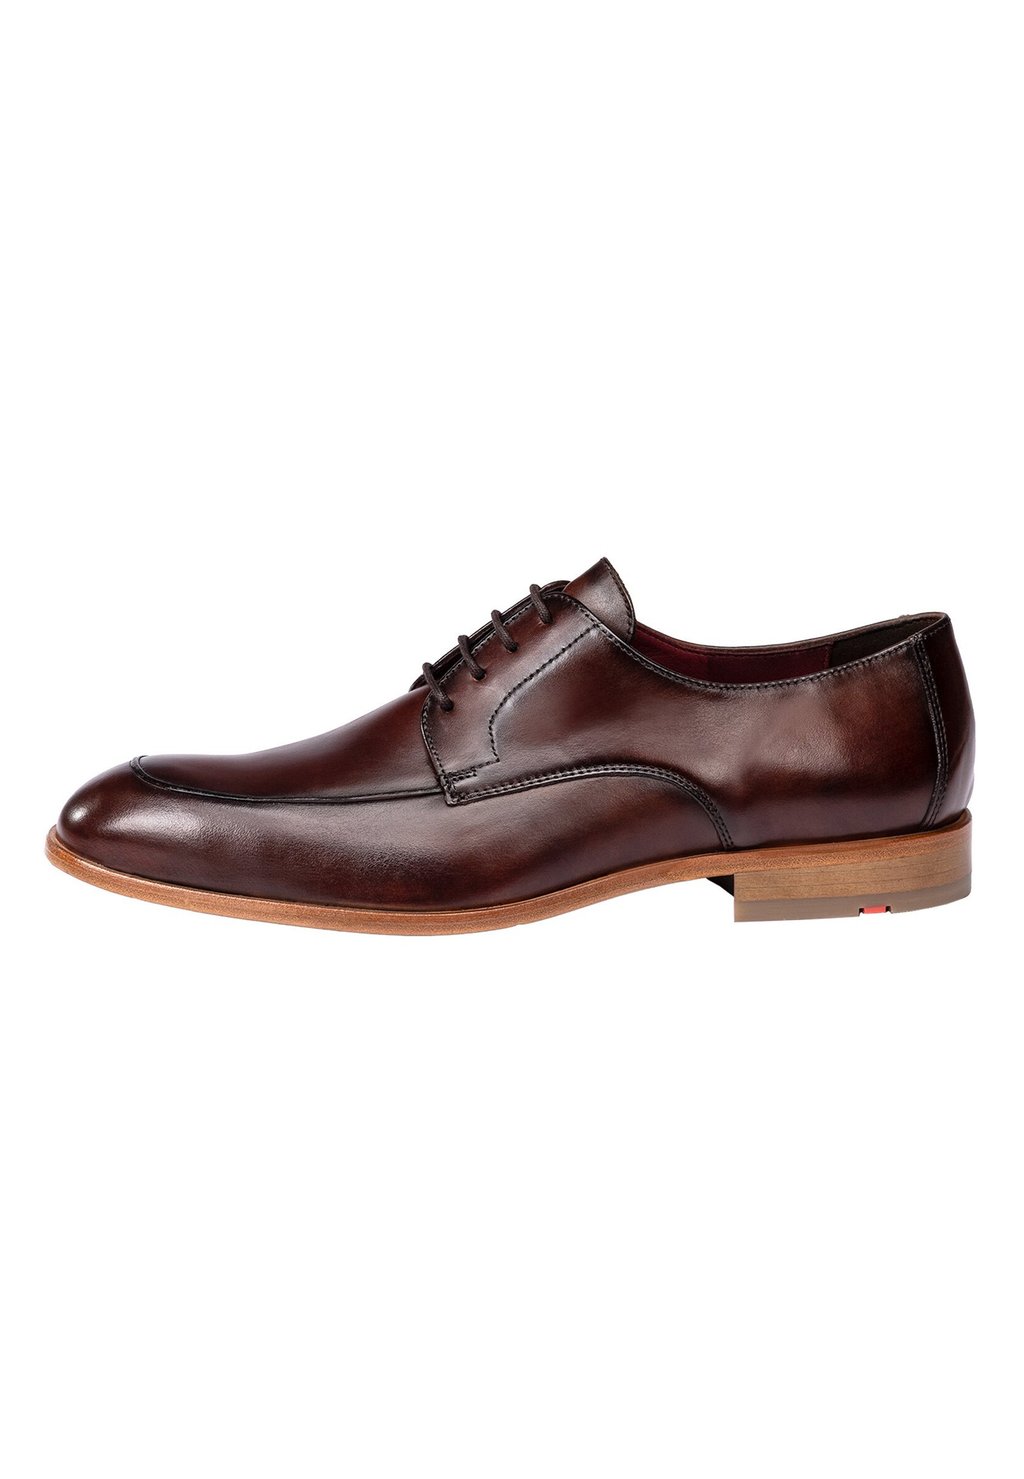 Элегантные туфли на шнуровке Steward Lloyd, коричневый элегантные туфли на шнуровке gabriel lloyd синий